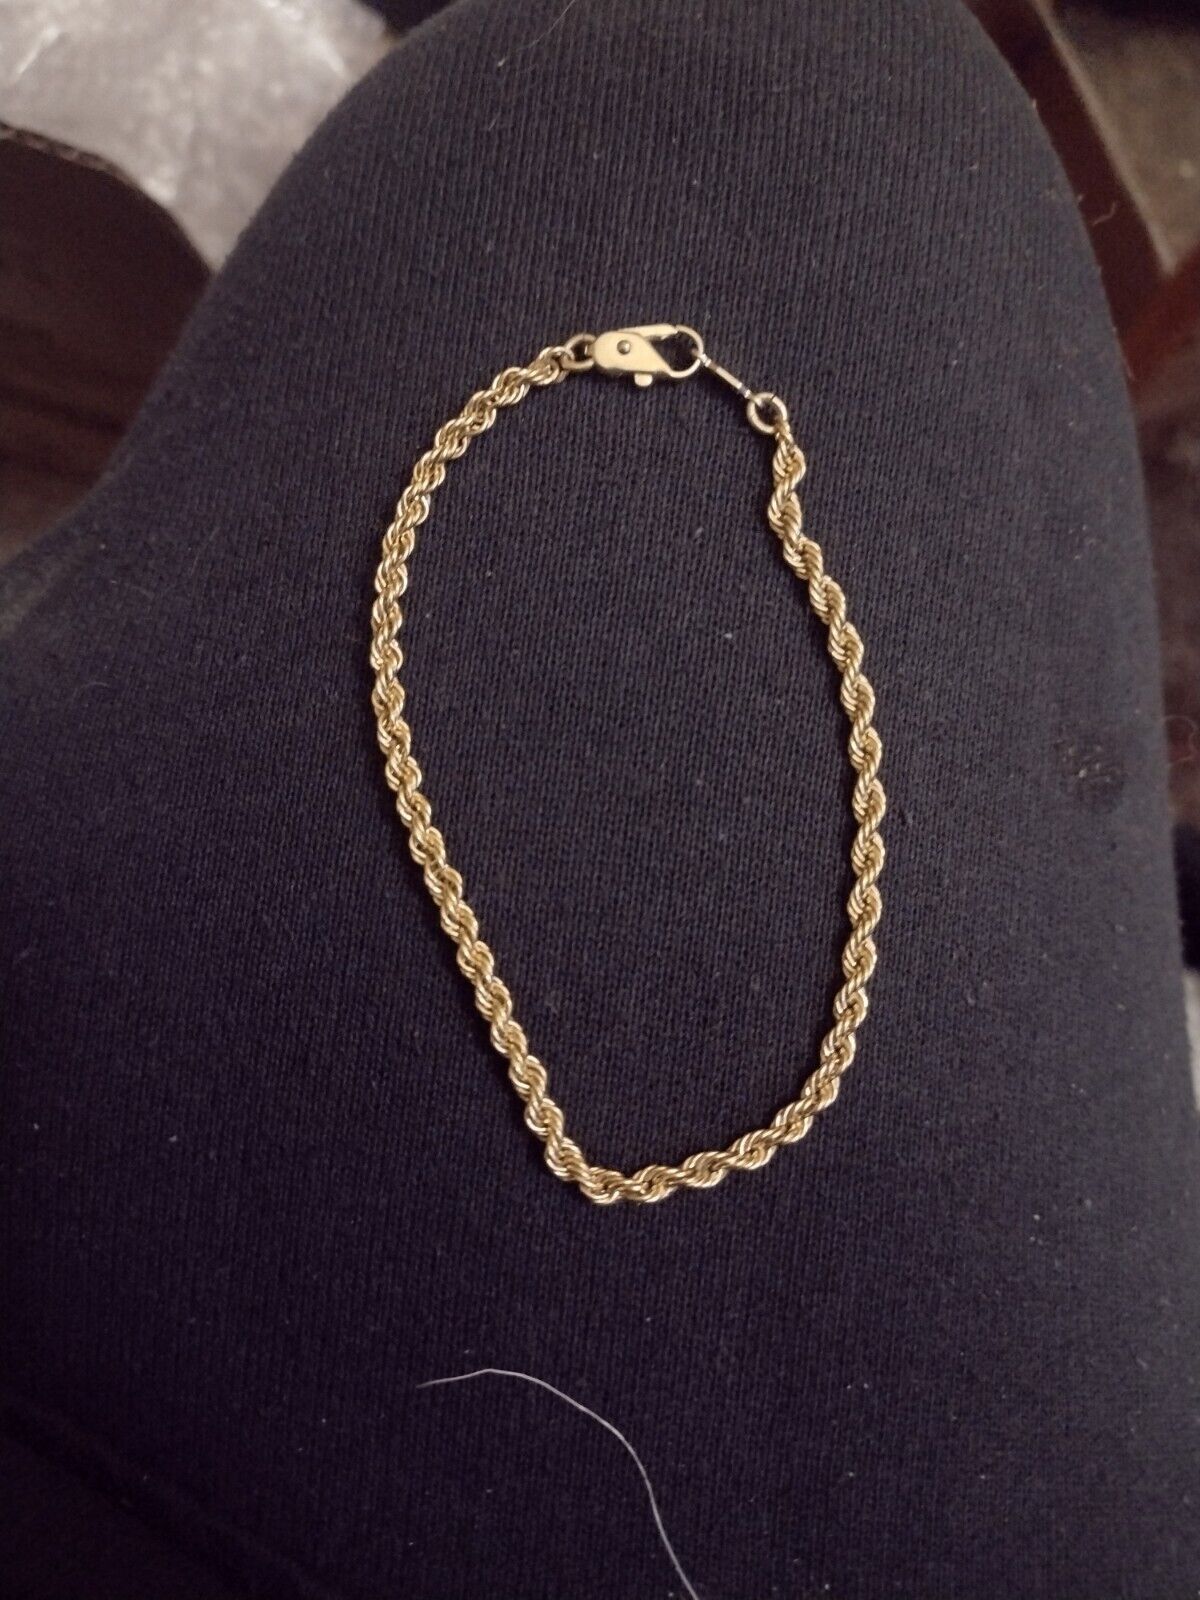 24k gold plated bracelet - image 1